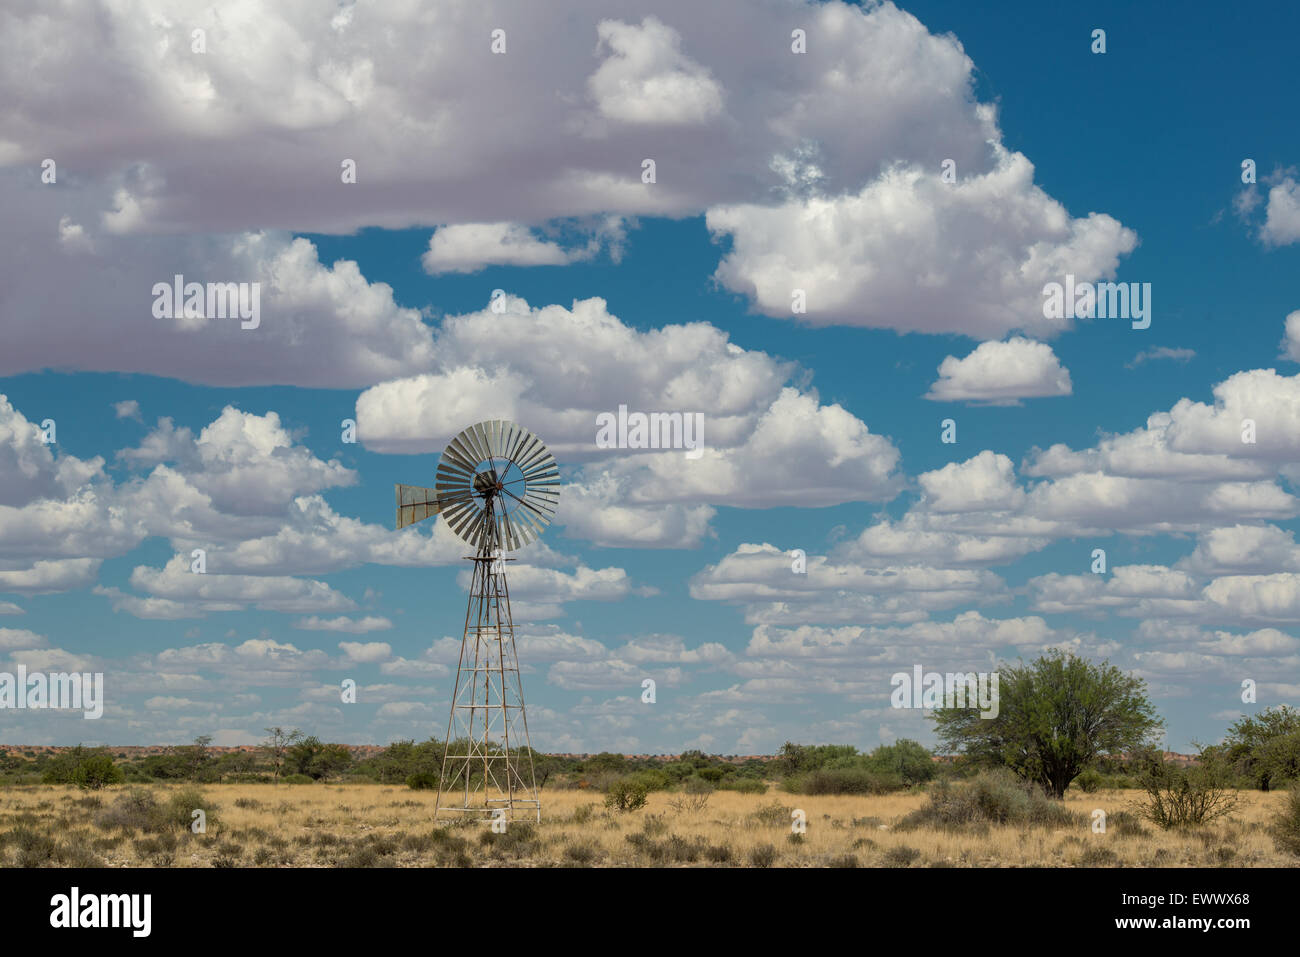 Koes Namibia, Africa - molino de viento en medio del amplio paisaje de Namibia con nubes sobrecarga Foto de stock